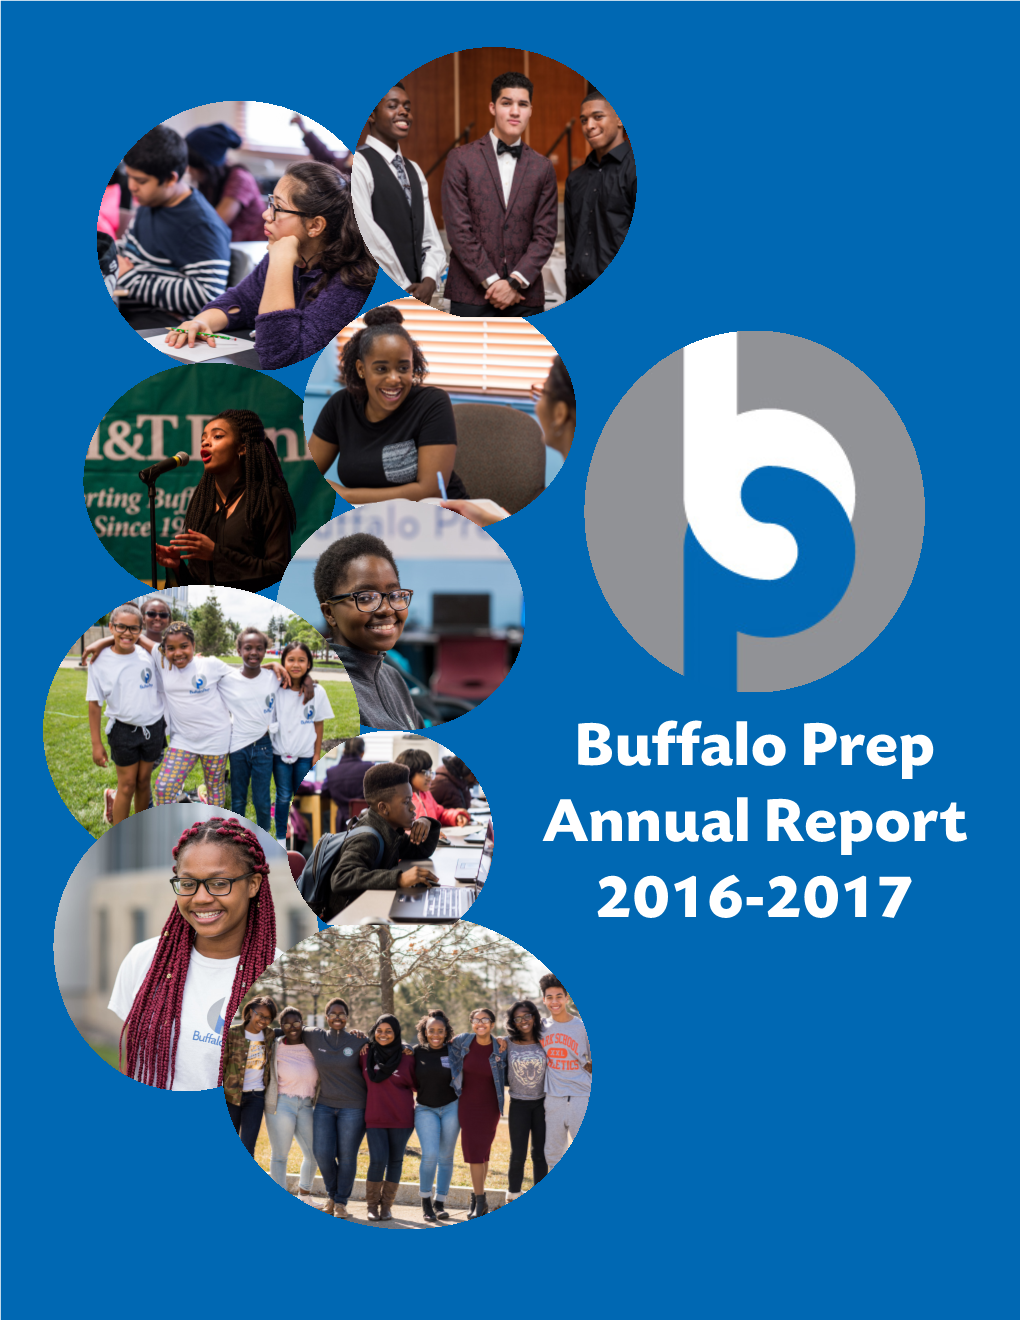 Buffalo Prep Annual Report 2016-2017